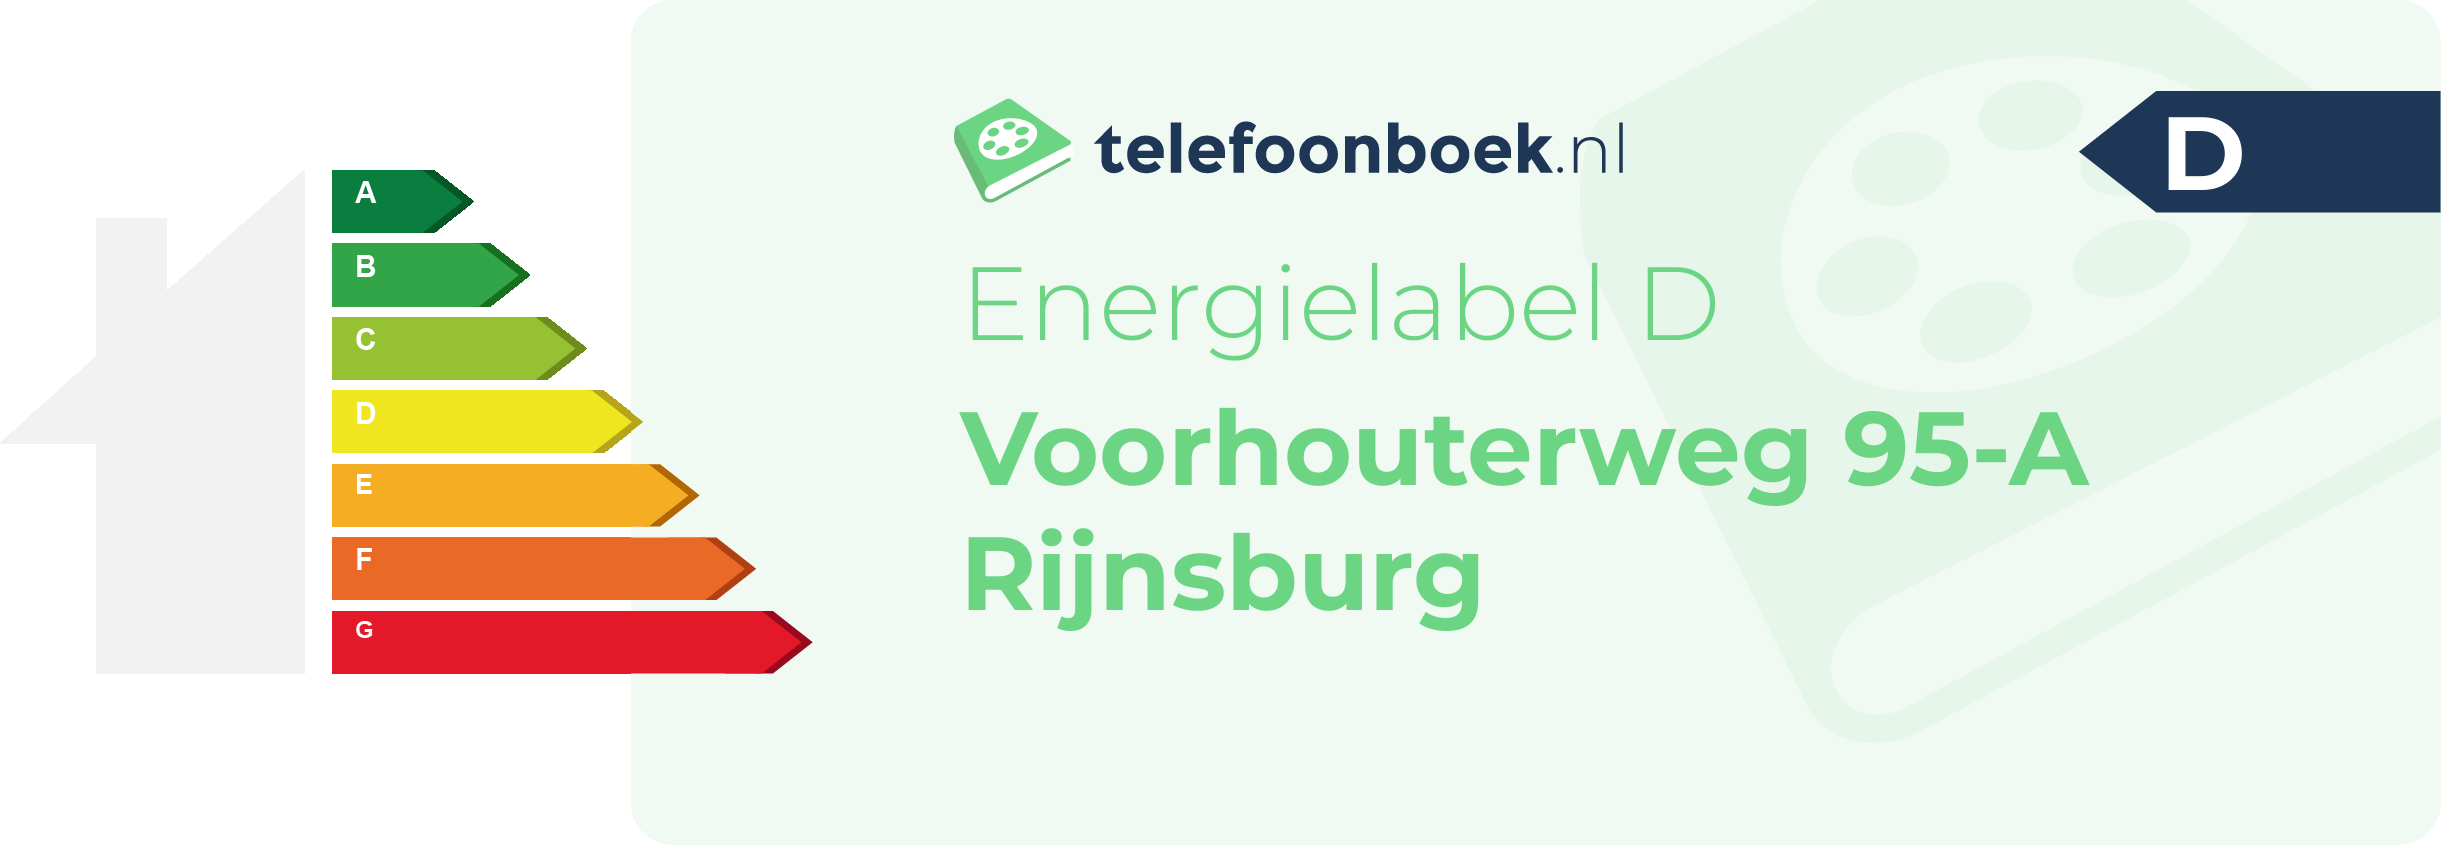 Energielabel Voorhouterweg 95-A Rijnsburg